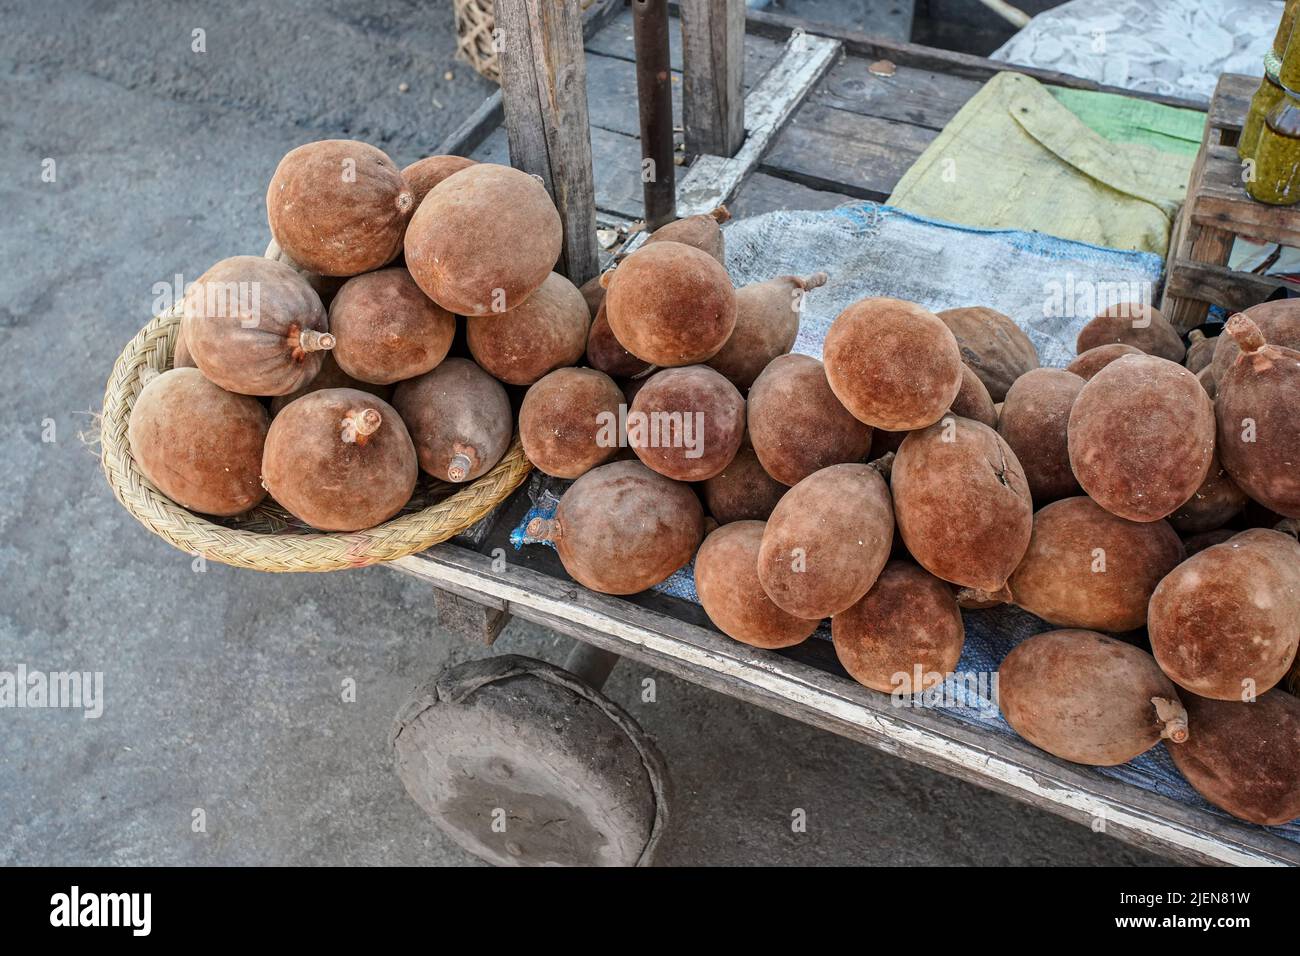 Baobab brun clair fruits exposés au marché de rue, tas placé sur simple chariot en bois, détail de gros plan Banque D'Images